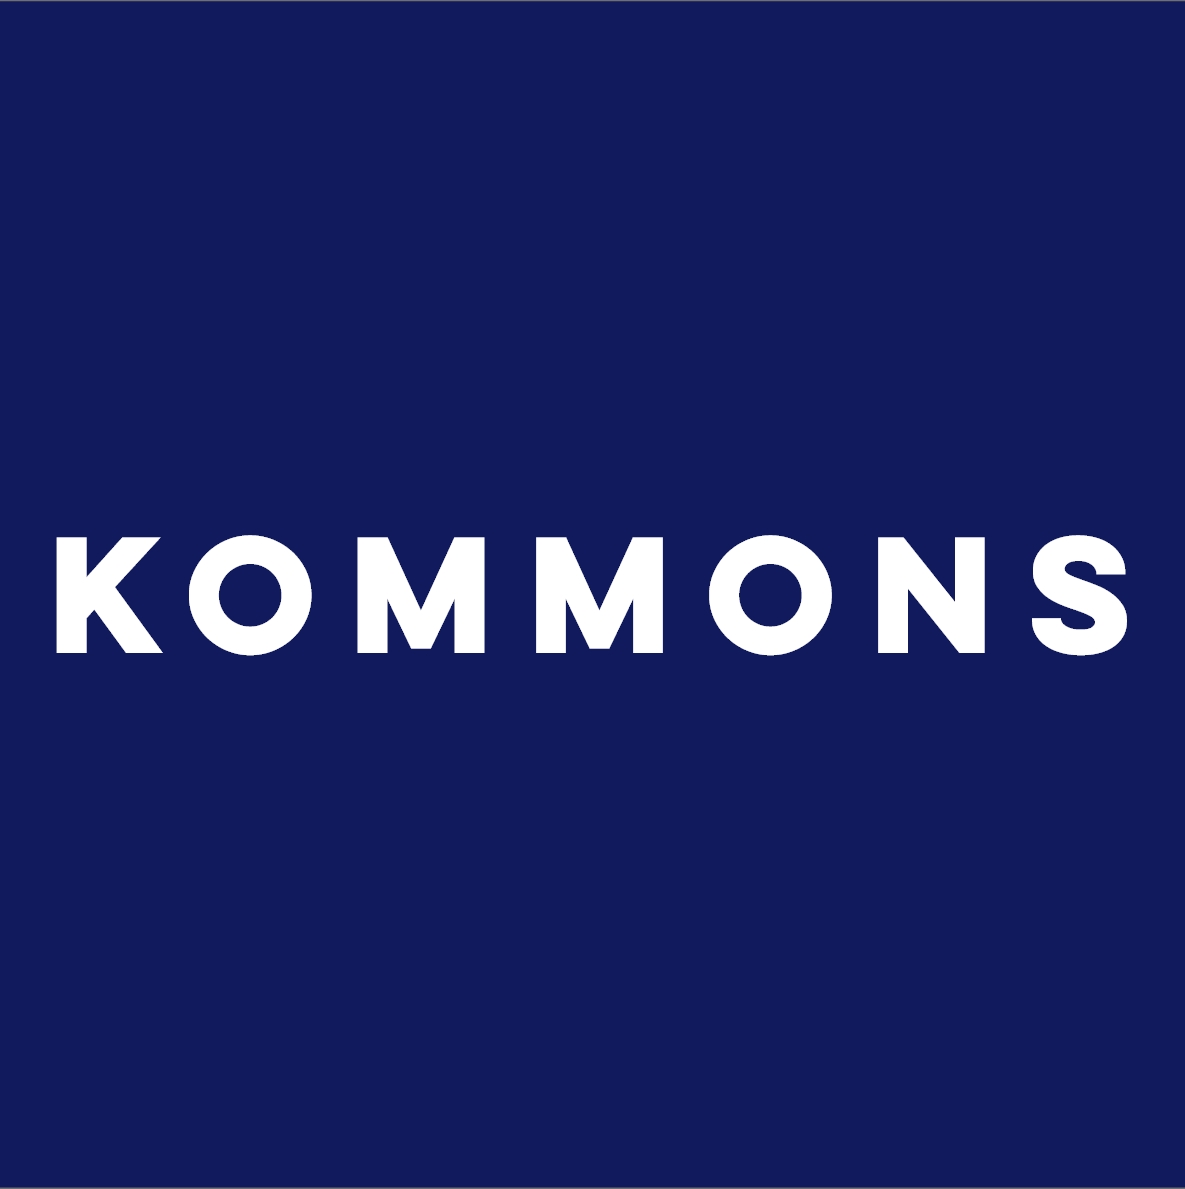 株式会社KOMMONS